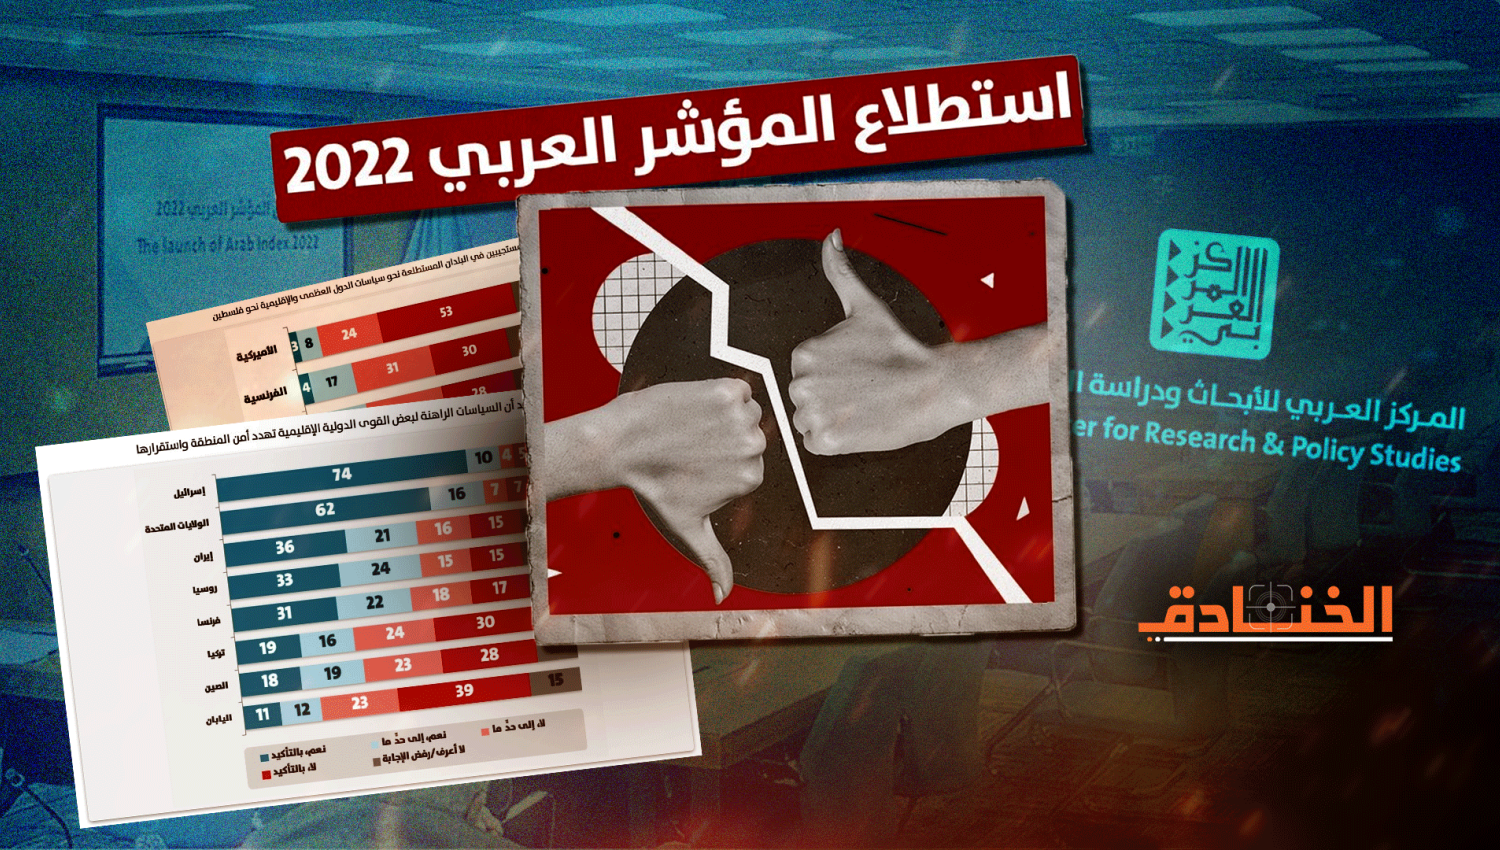 أبرز ما جاء في المؤشر العربي للعام 2022: إسرائيل وأمريكا هما الأخطر!!